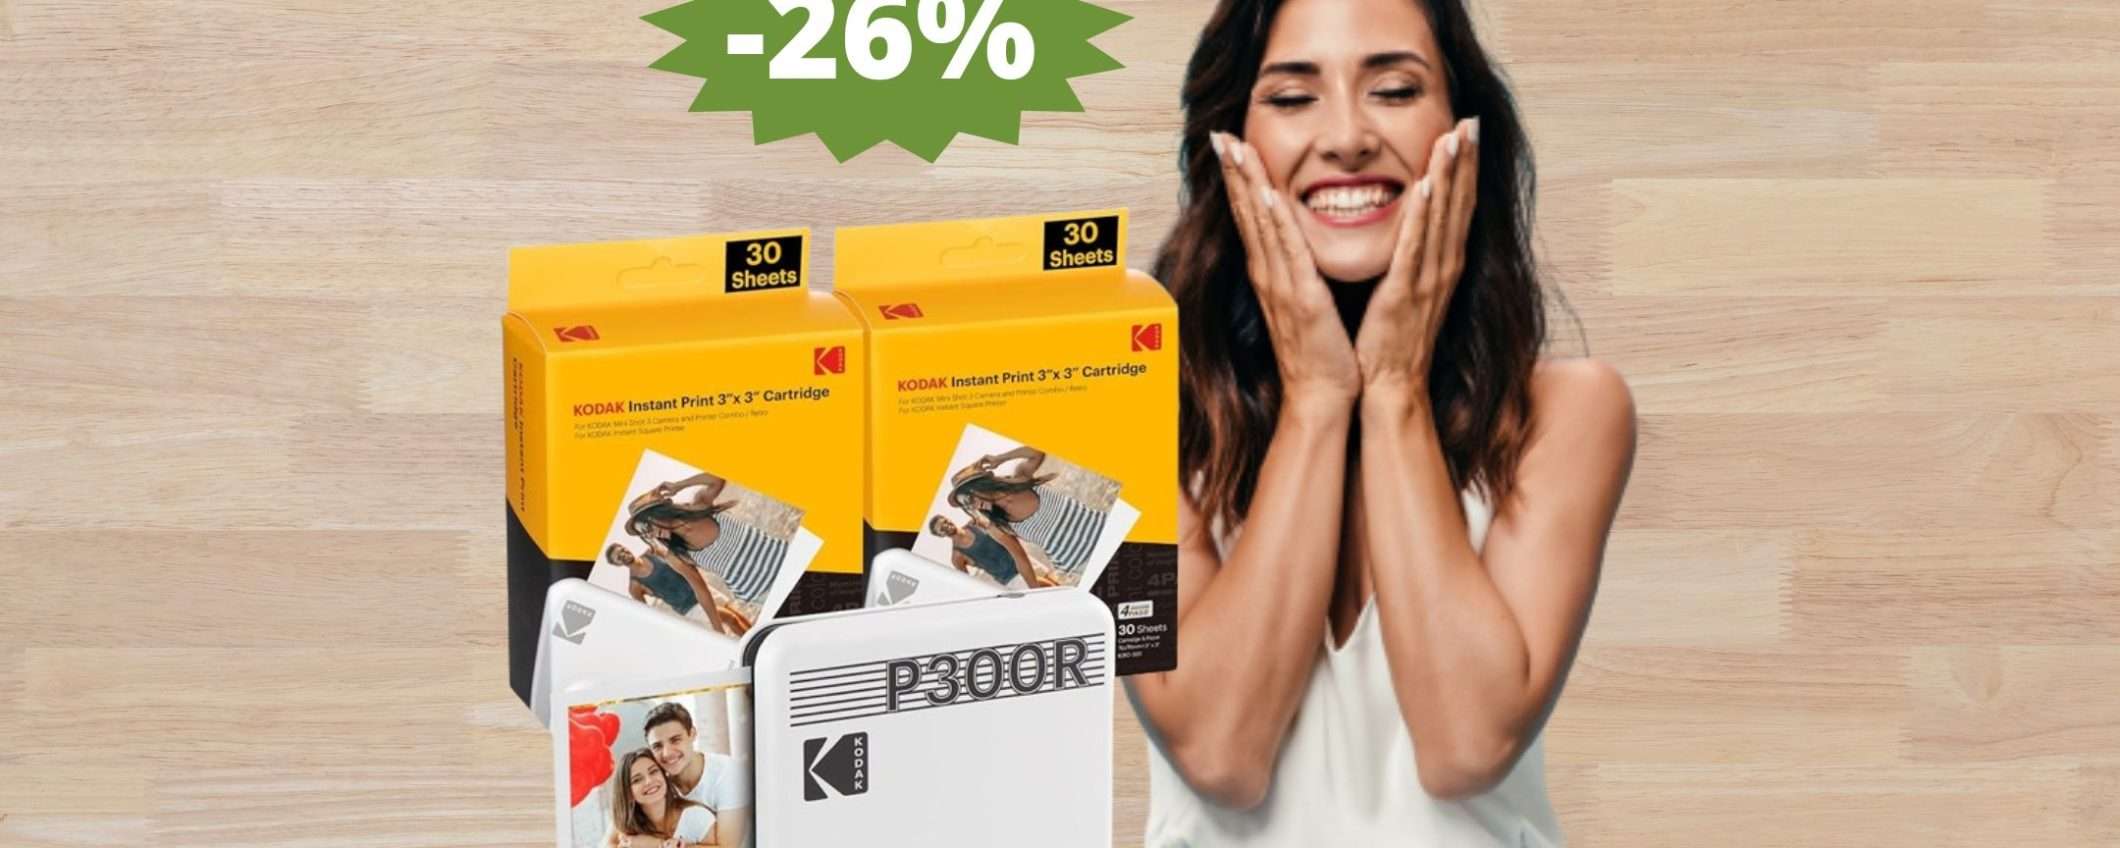 Kodak Mini 3 Retro: un AFFARE da non perdere su Amazon (-26%)